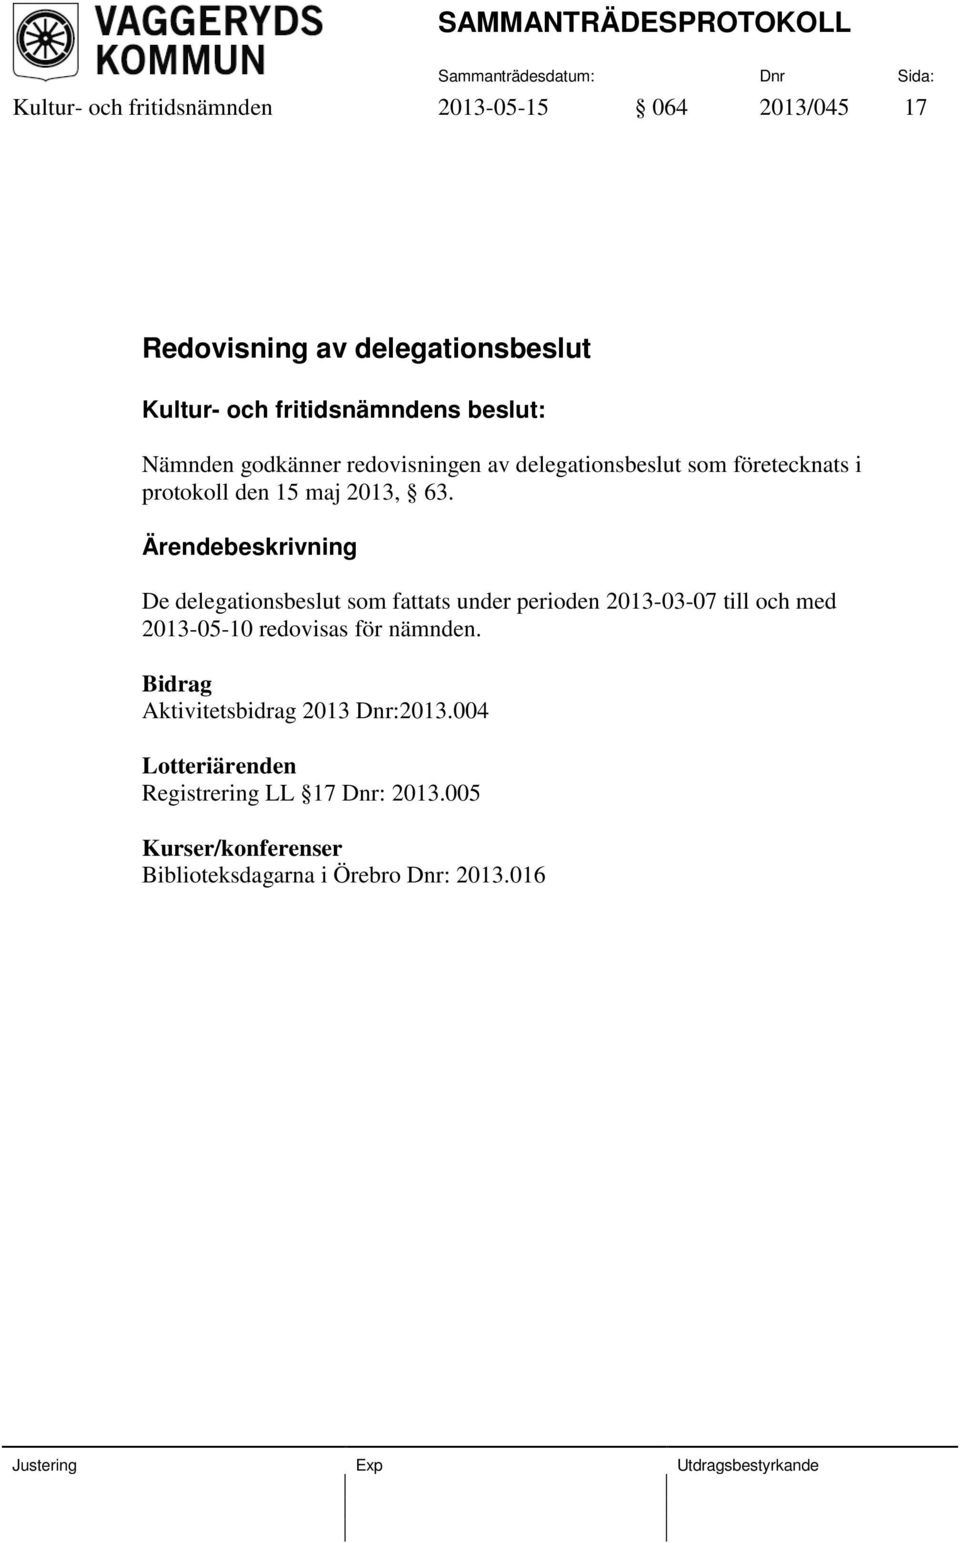 De delegationsbeslut som fattats under perioden 2013-03-07 till och med 2013-05-10 redovisas för nämnden.